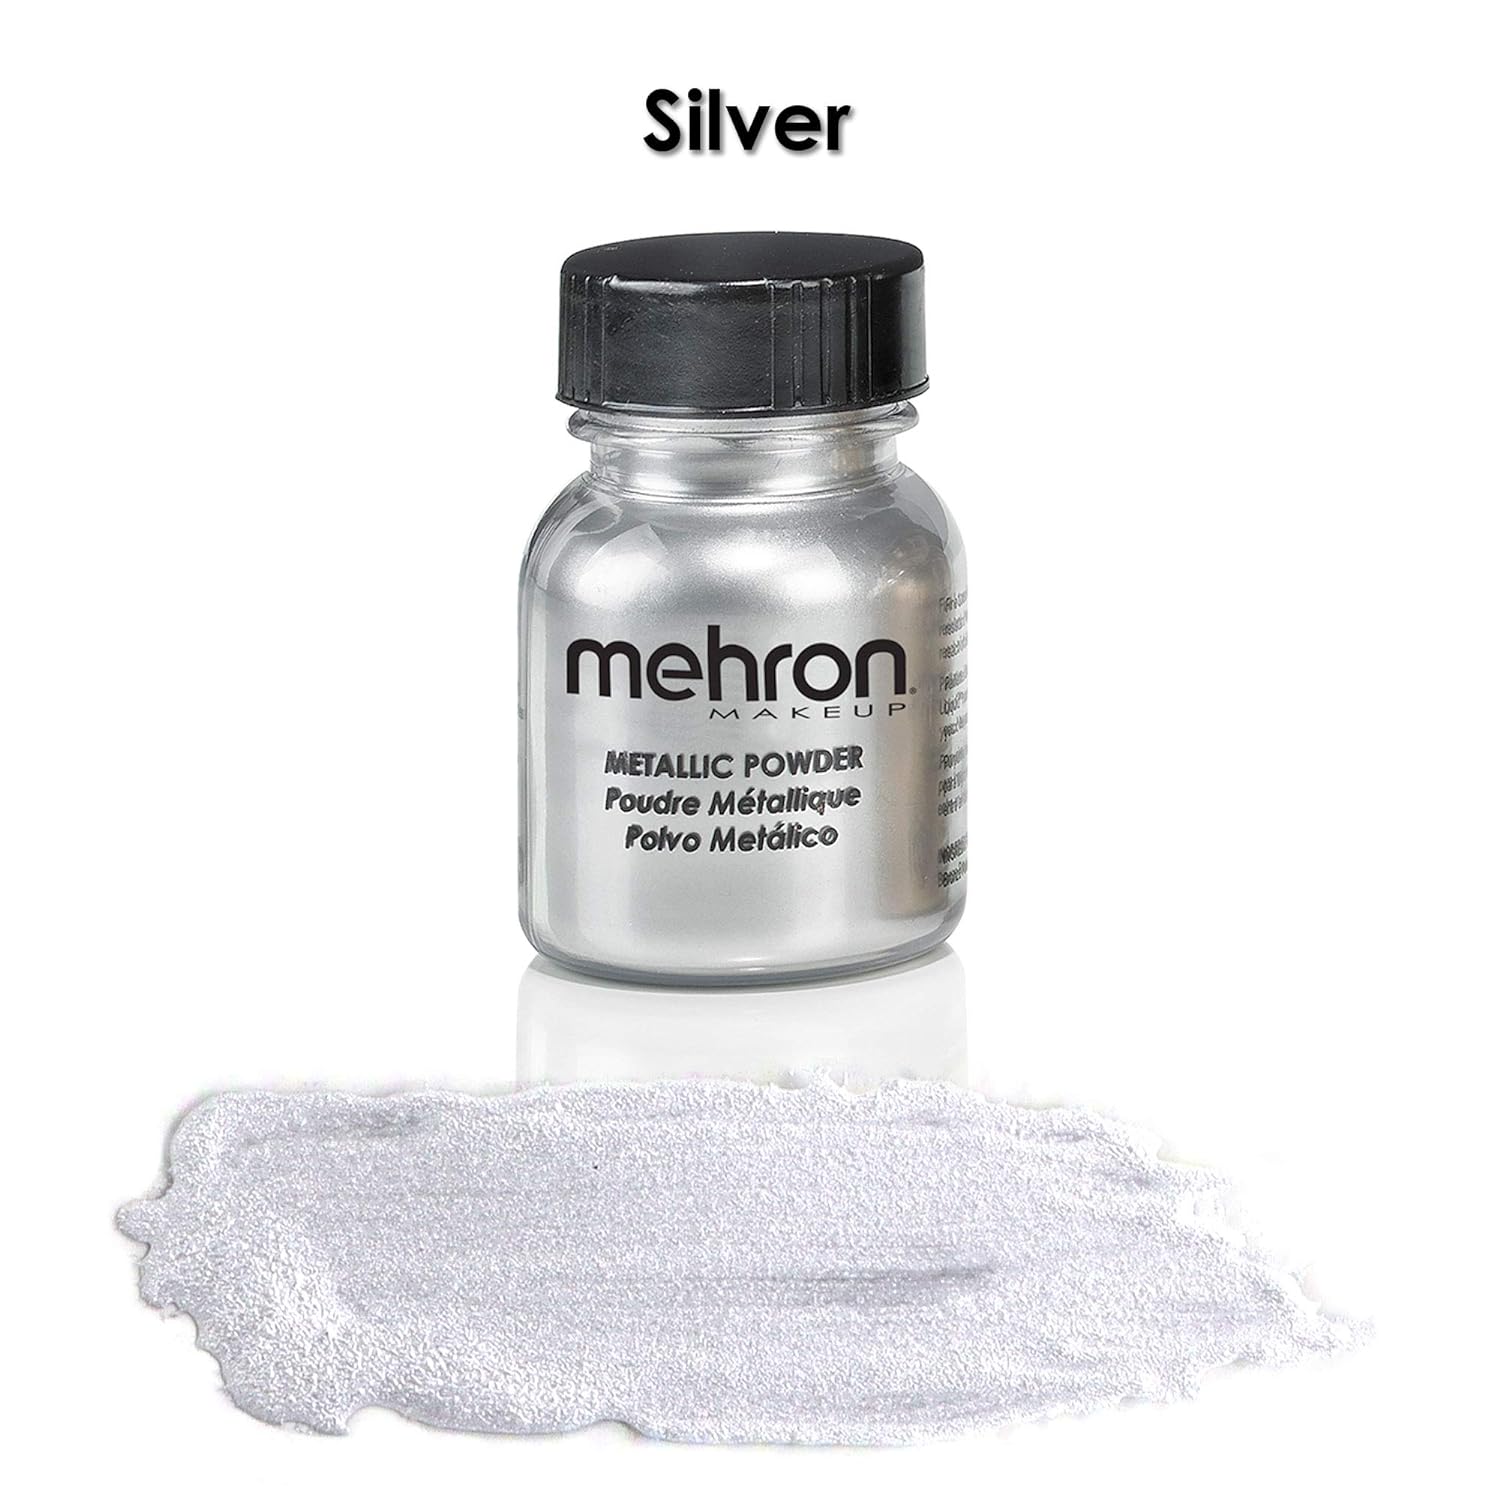  Mehron Makeup Metallic Powder (.5 Ounce) (Silver)